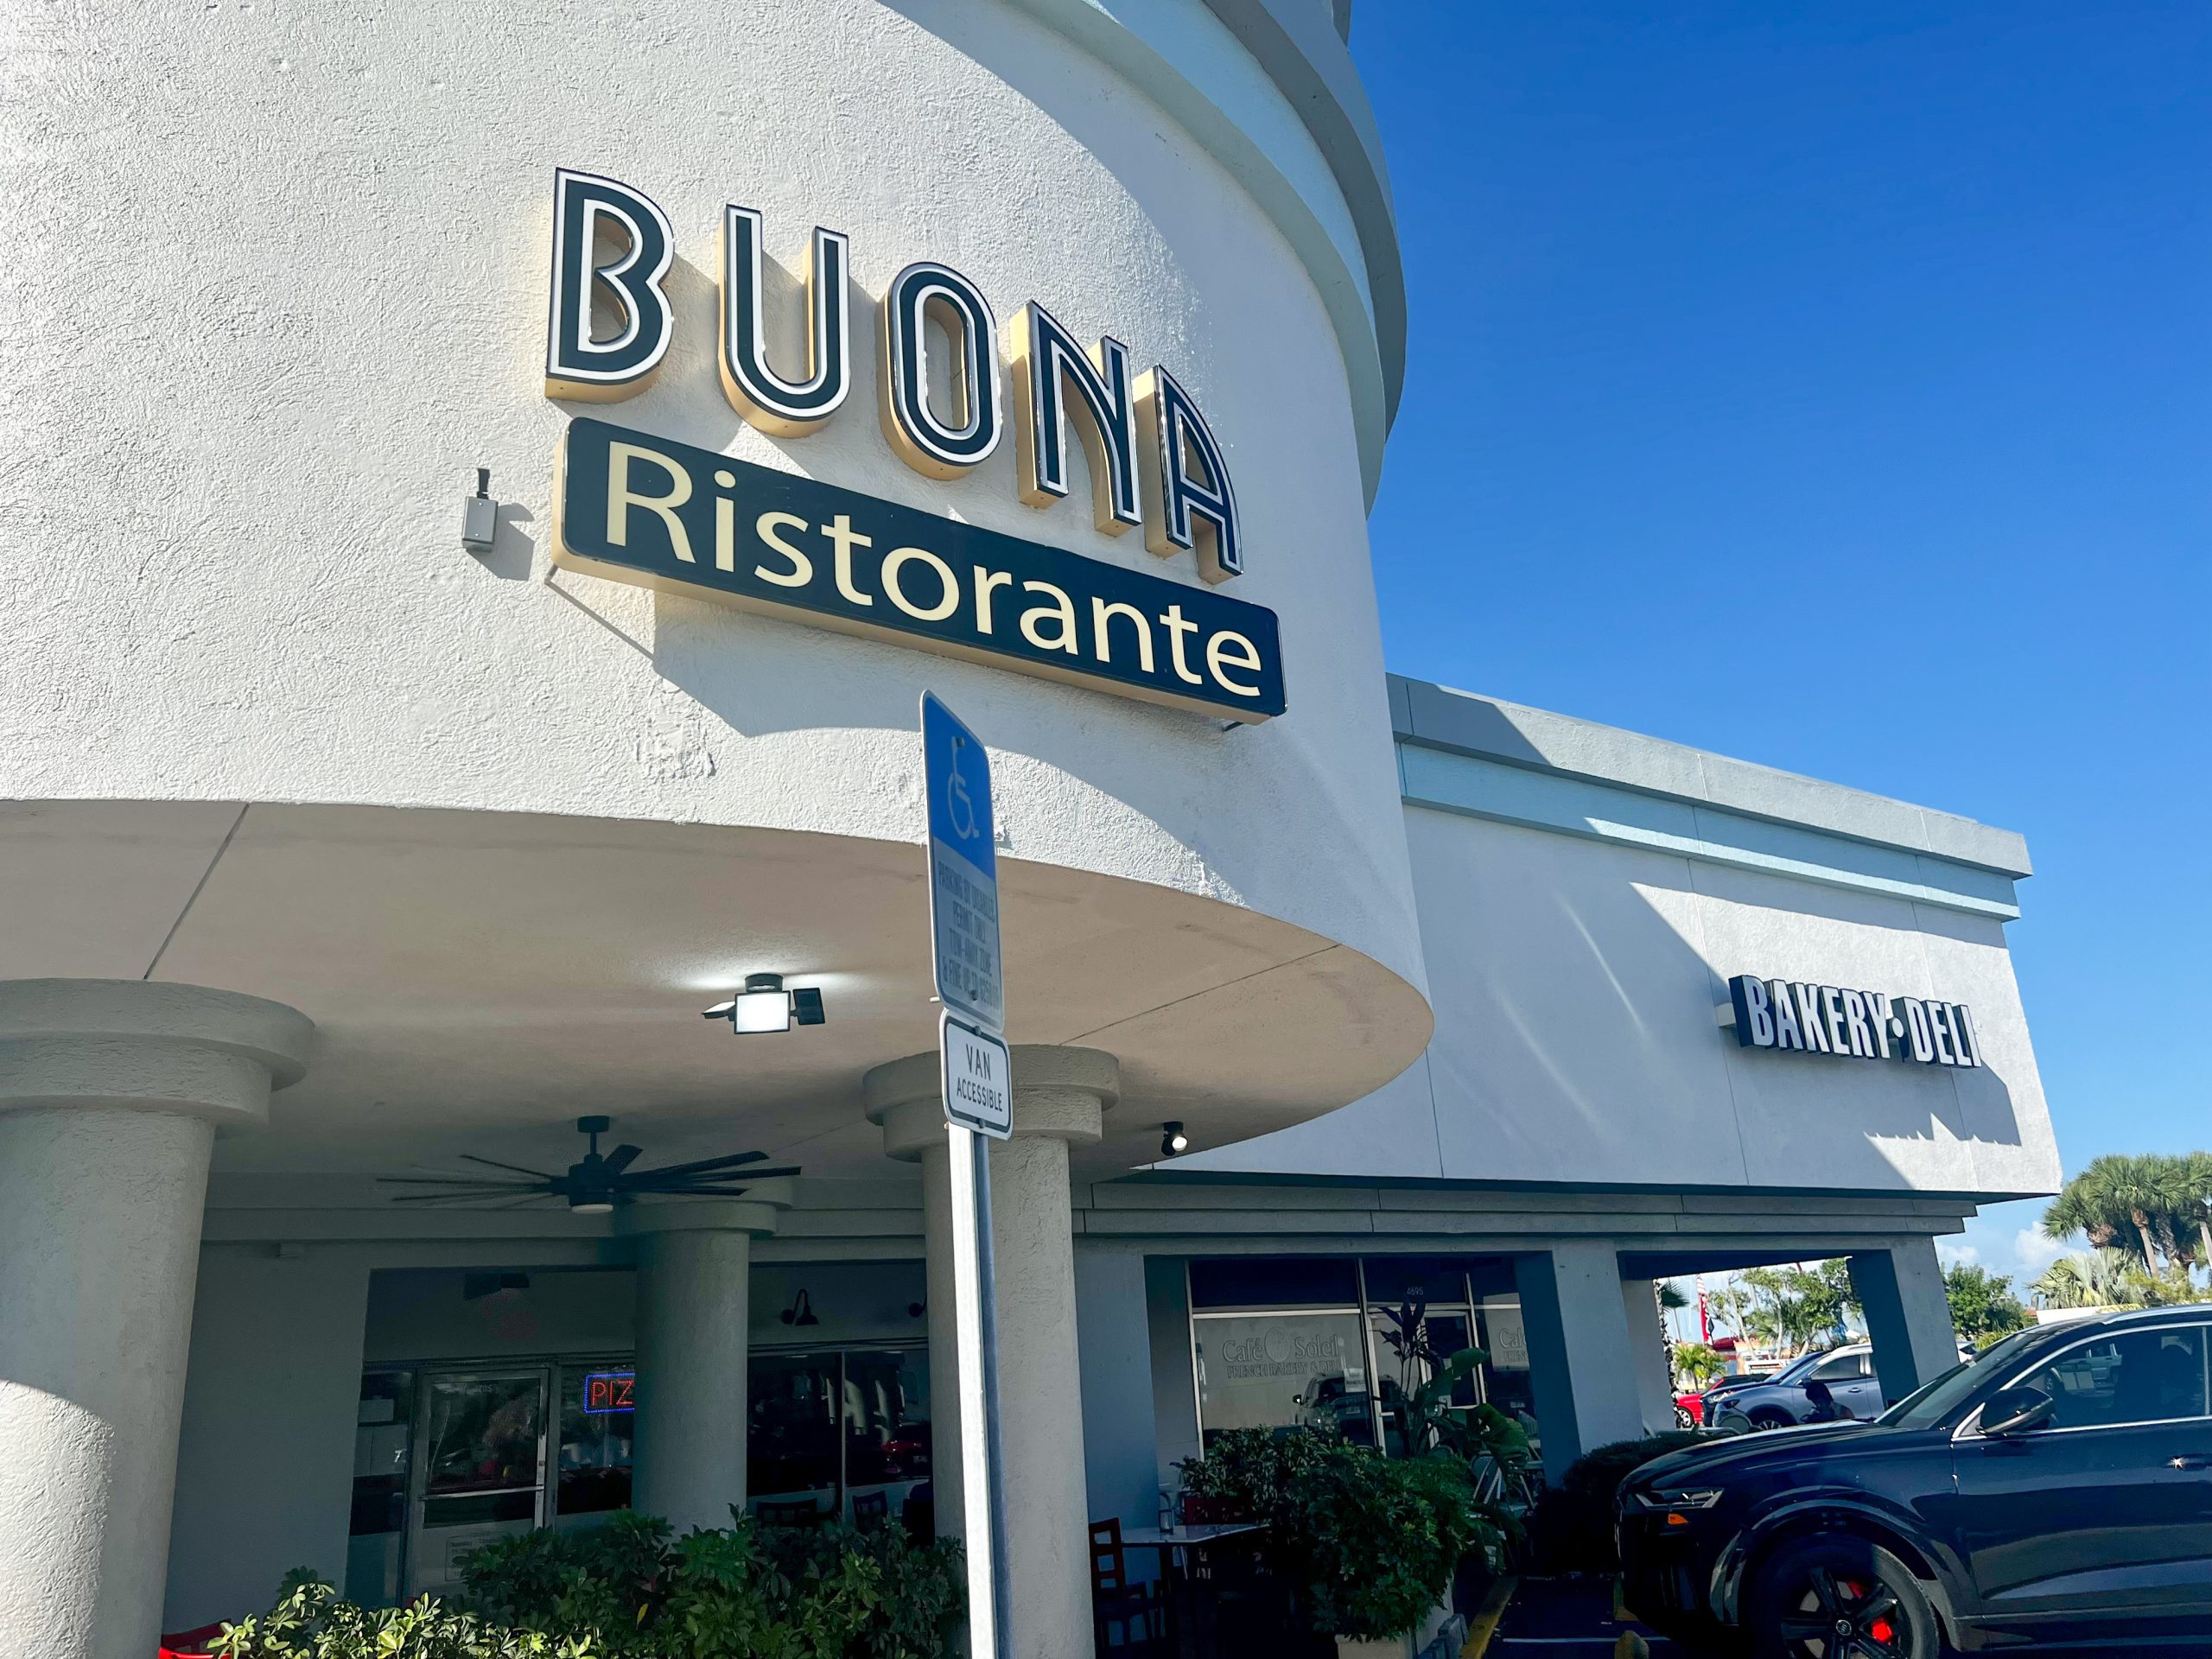 Buona Ristorante located on Gulf Blvd of St. Pete Beach, FL